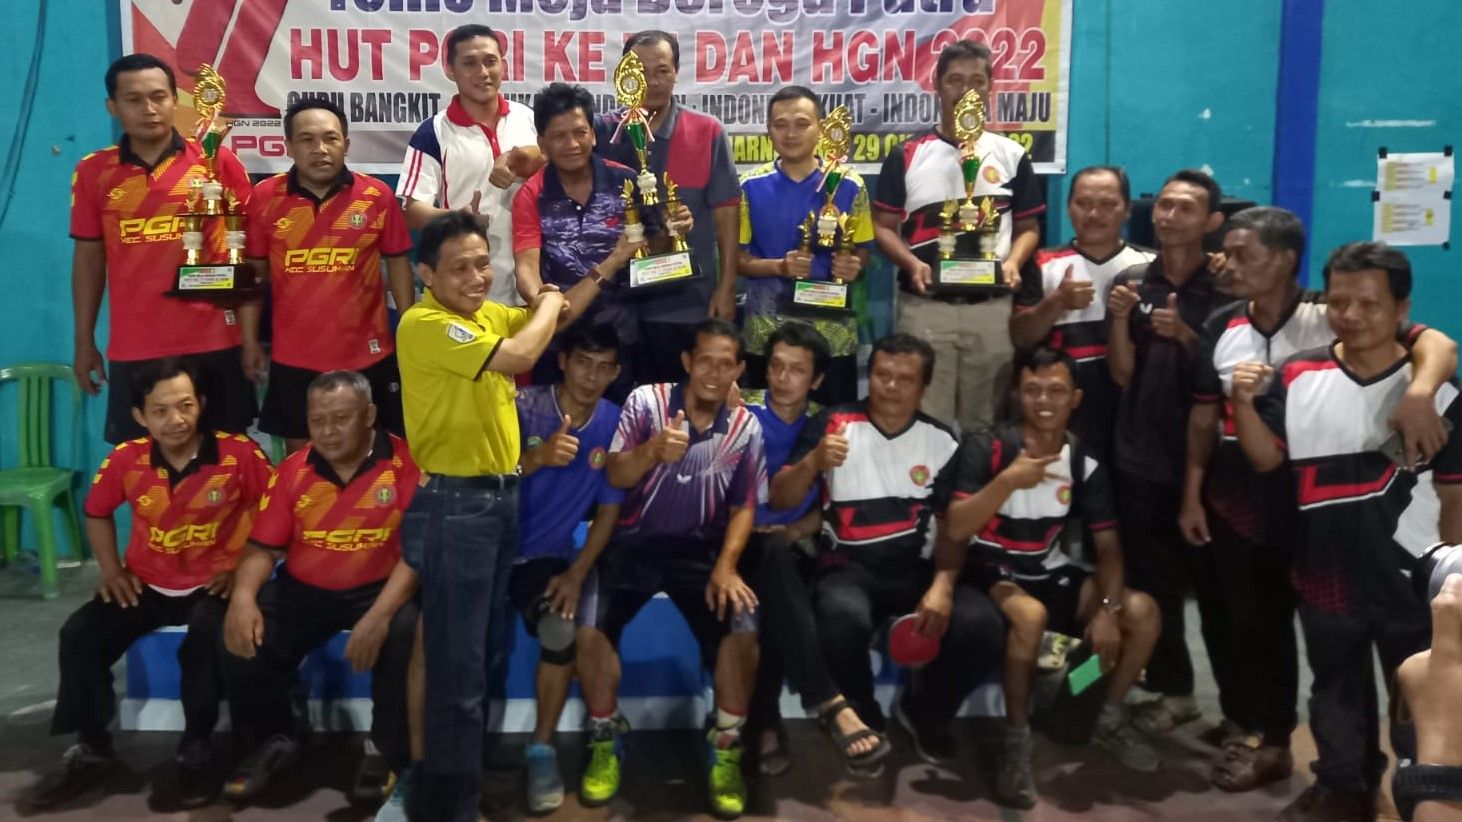 Ketua PGRI Banjarnegara berikan penghargaan kepada tim juara dalam lomba HUT PGRI ke 77